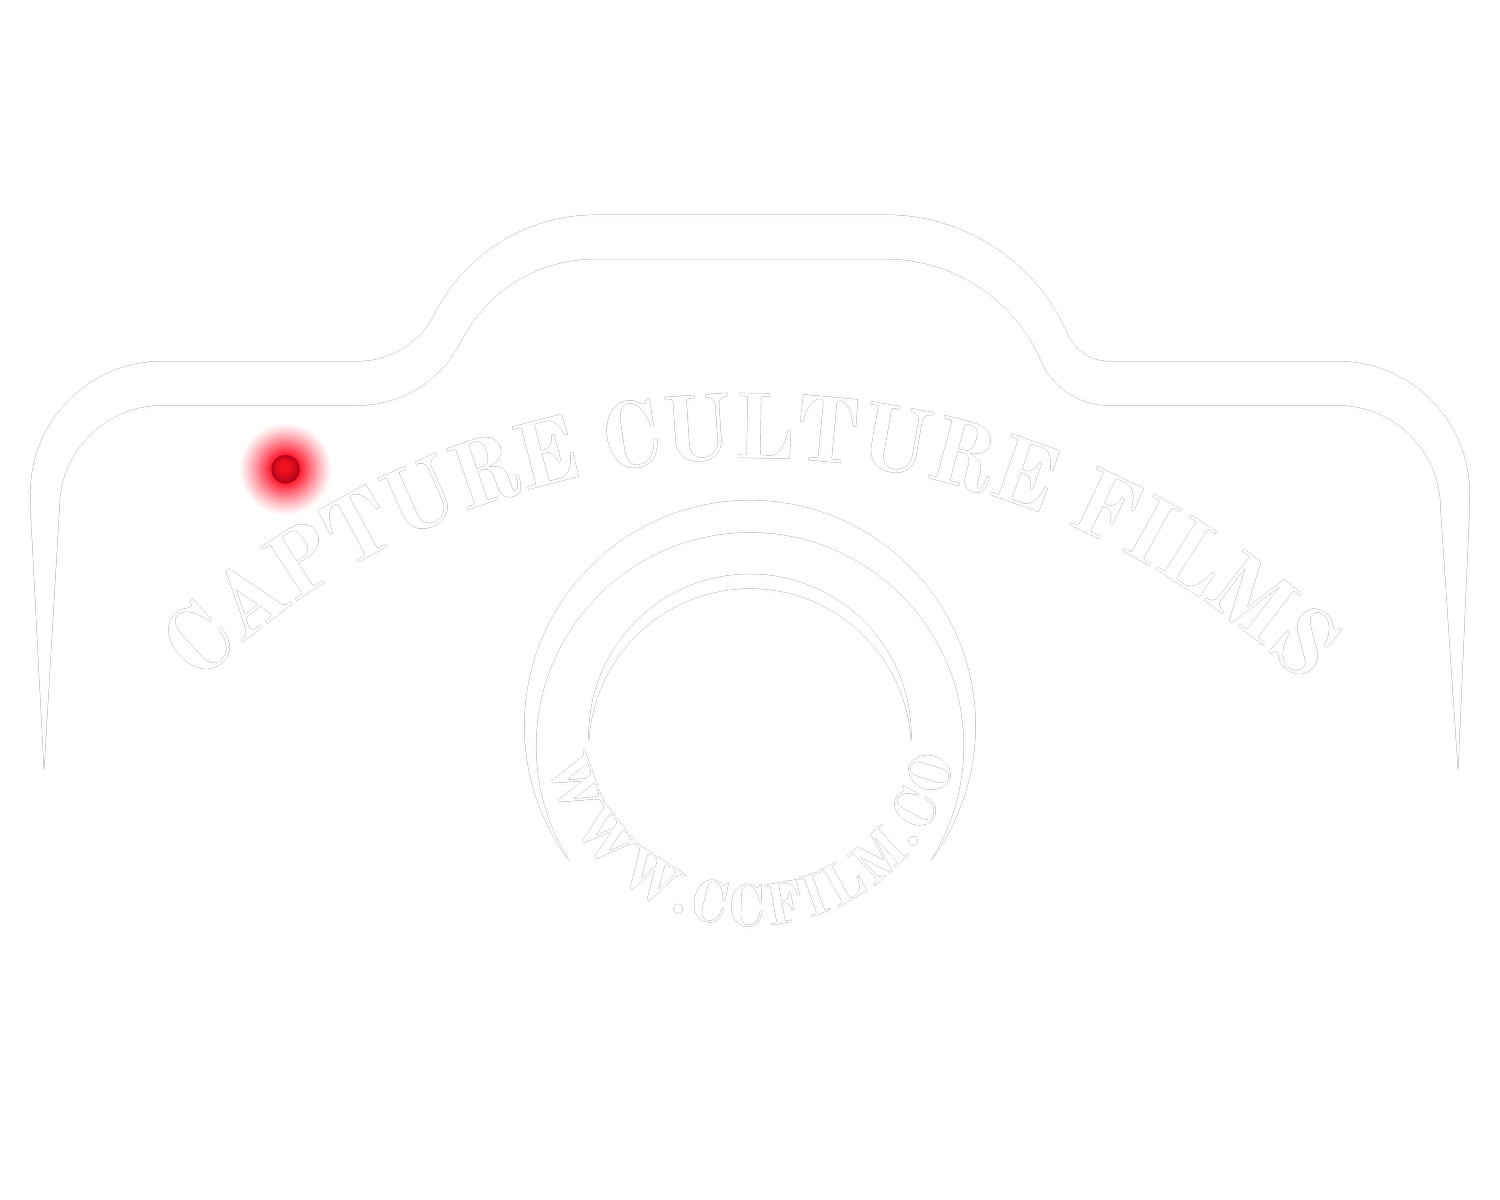 Capture Culture Films